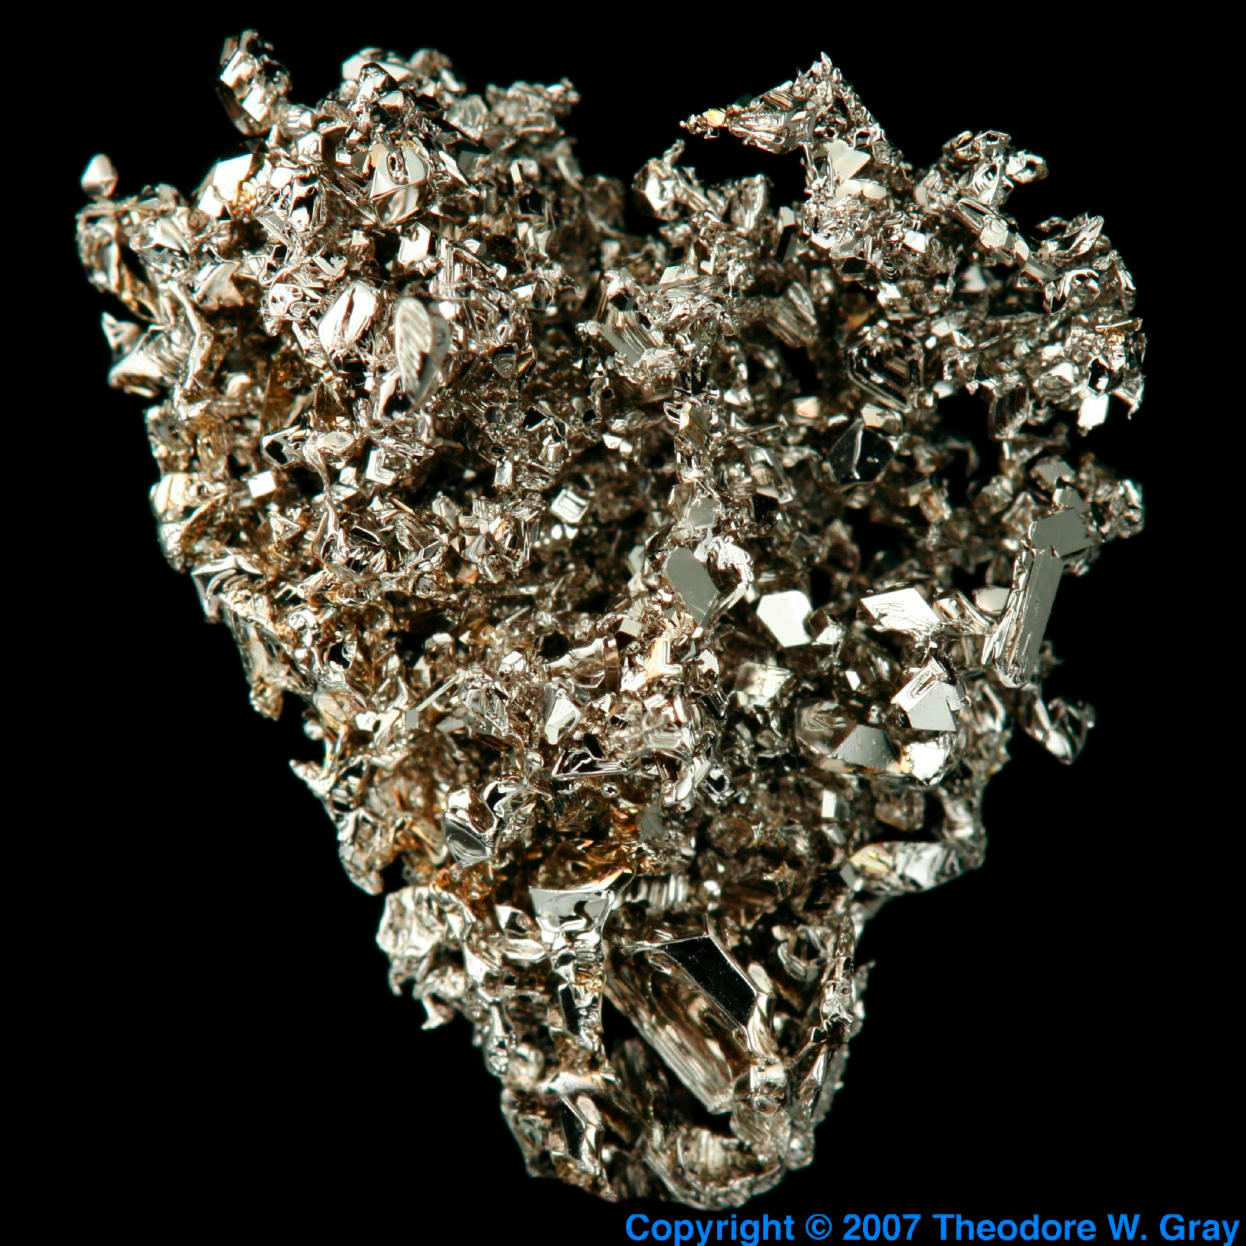 Platinum Vapor deposited crystal